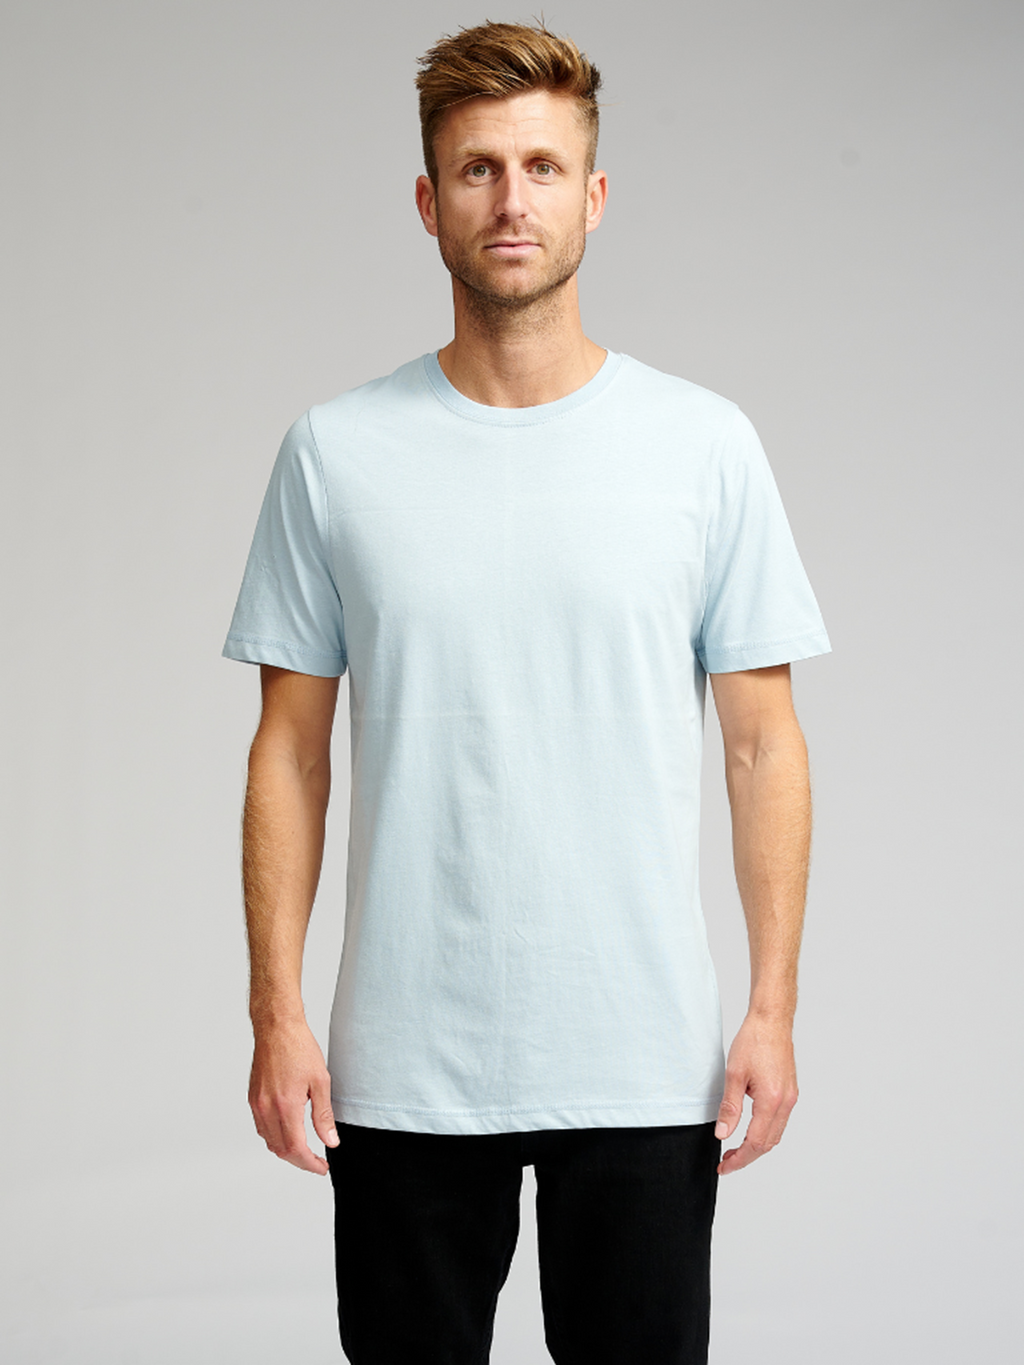 Økologiske Basic T-skjorter - Pakketilbud 9 stk. (email)